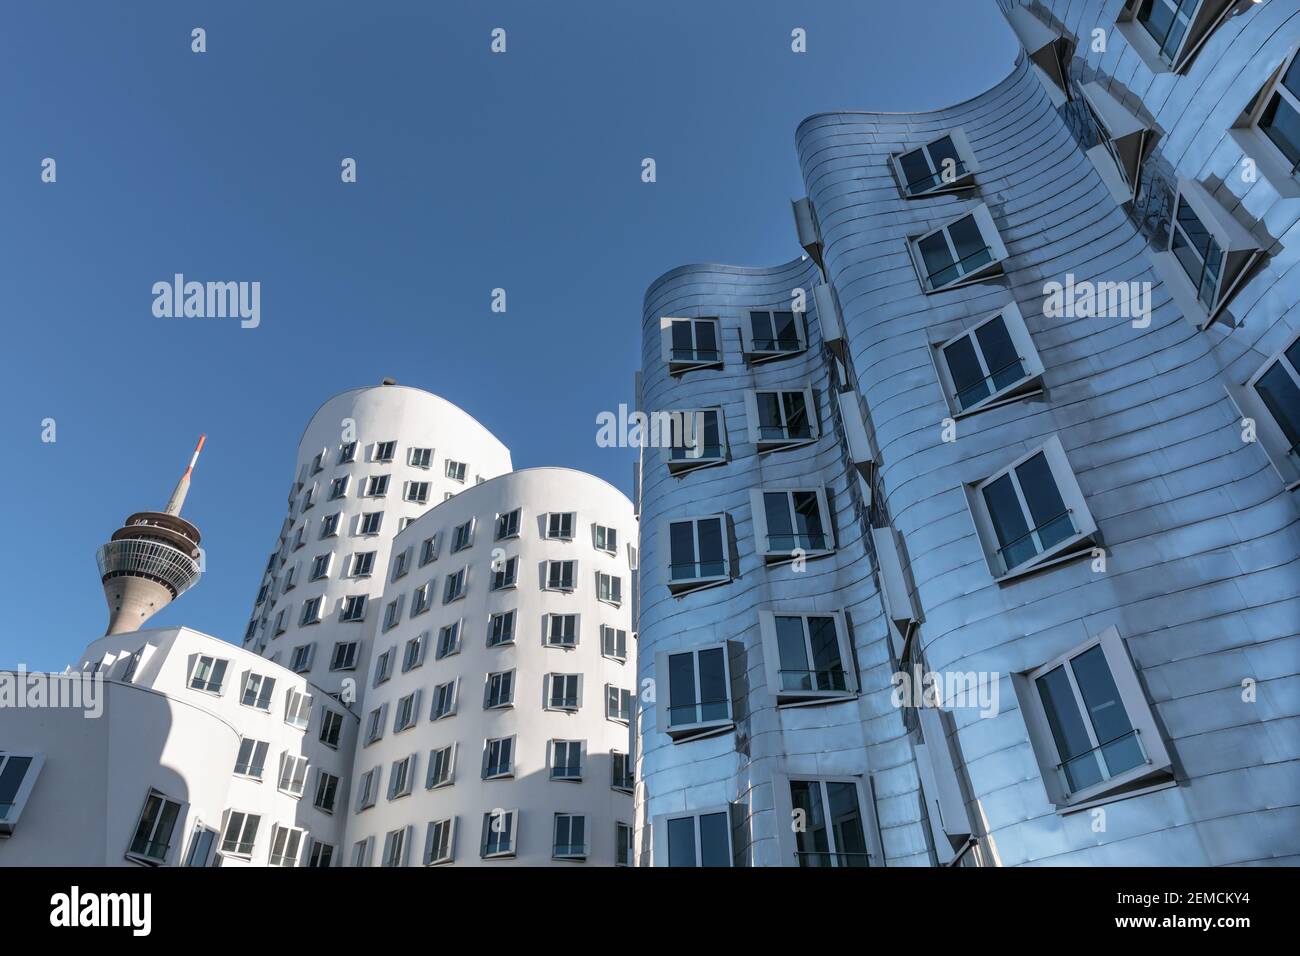 Neuer Zollhof oder der Neue Zollhof, Gebäude des Architekten Frank O. Gehry, Düsseldorf MedienHafen, Düsseldorf, Deutschland Stockfoto